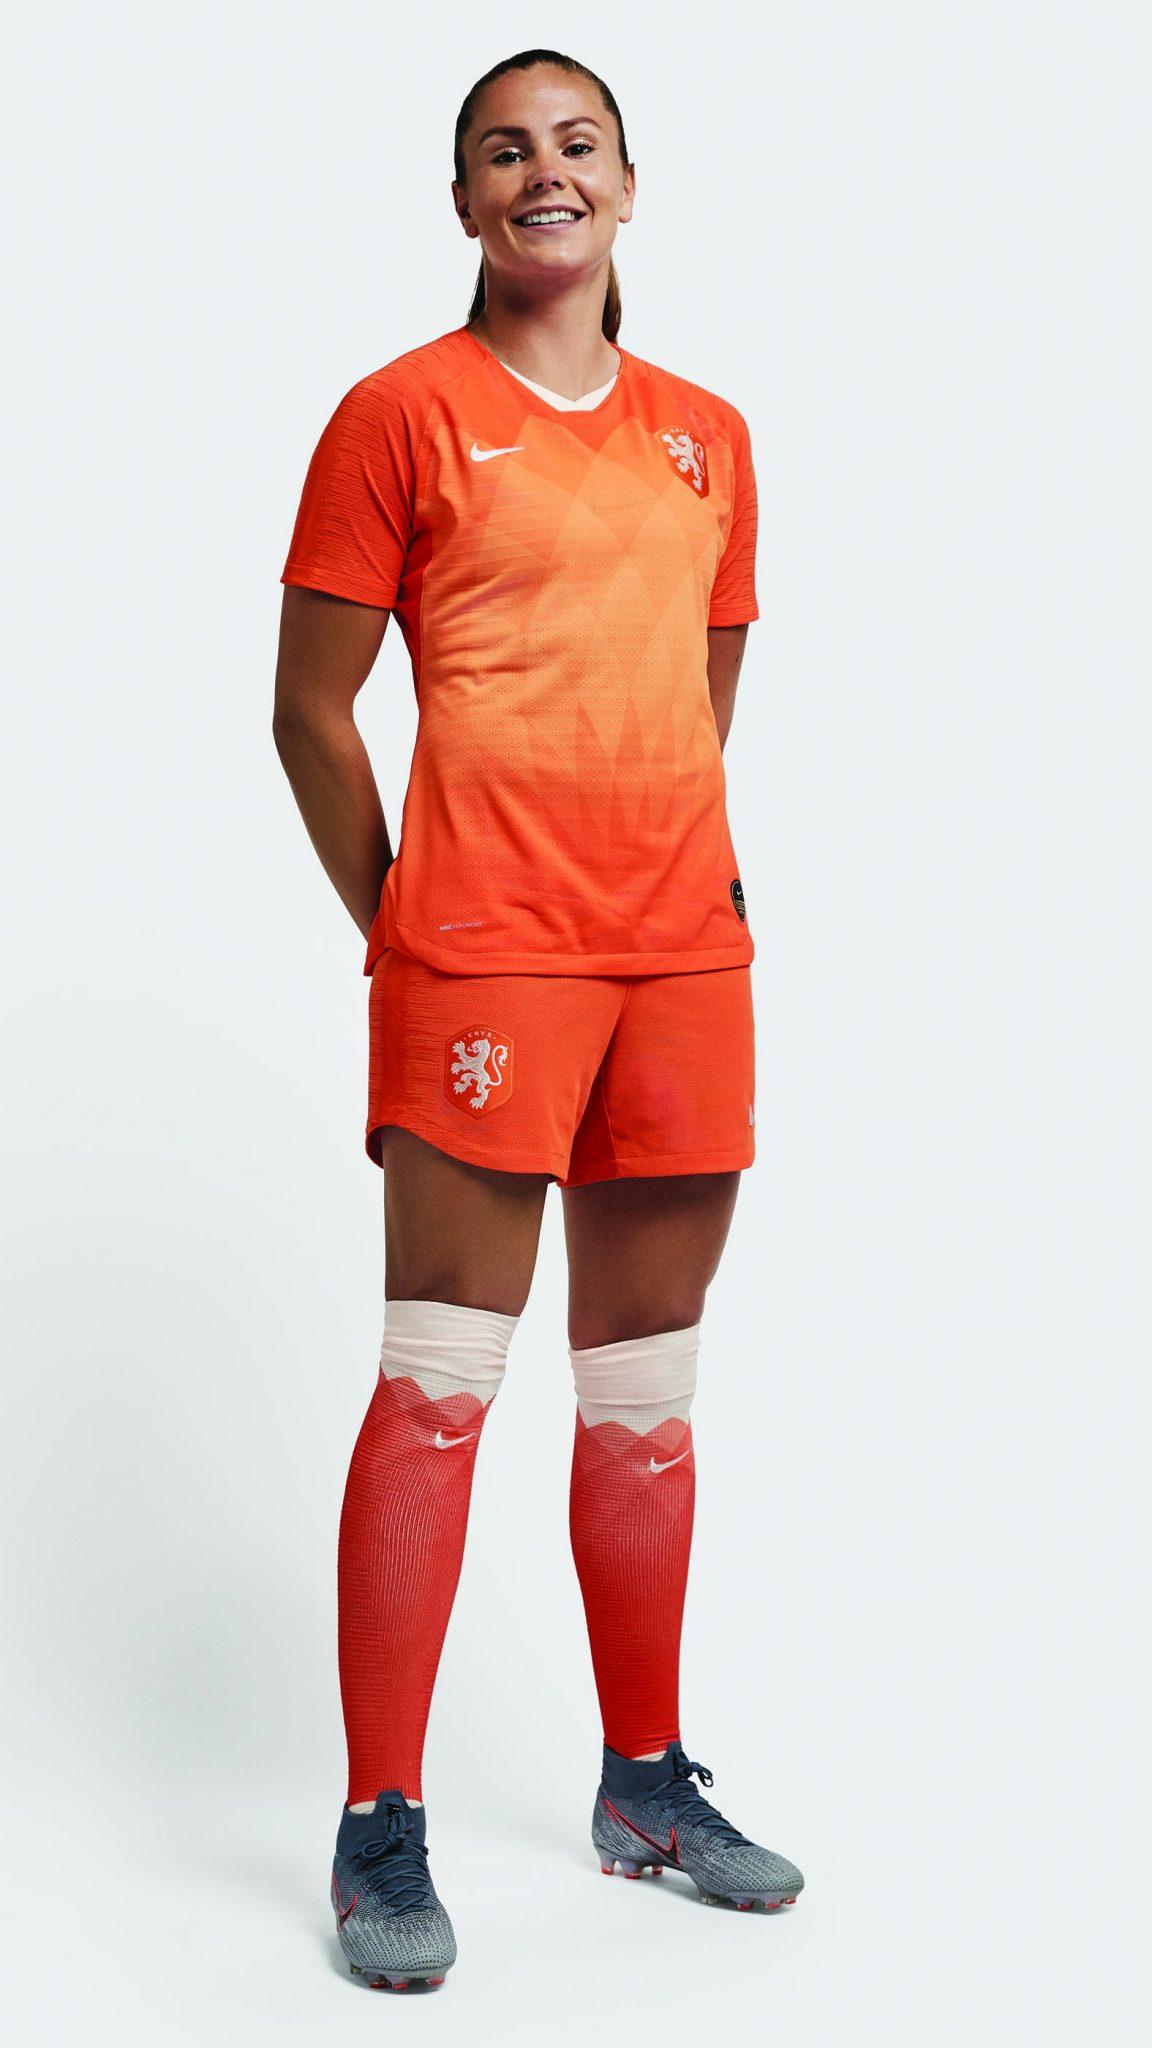 Dit Is Het WK Shirt Waar De Oranje Leeuwinnen In Gaan Voetballen